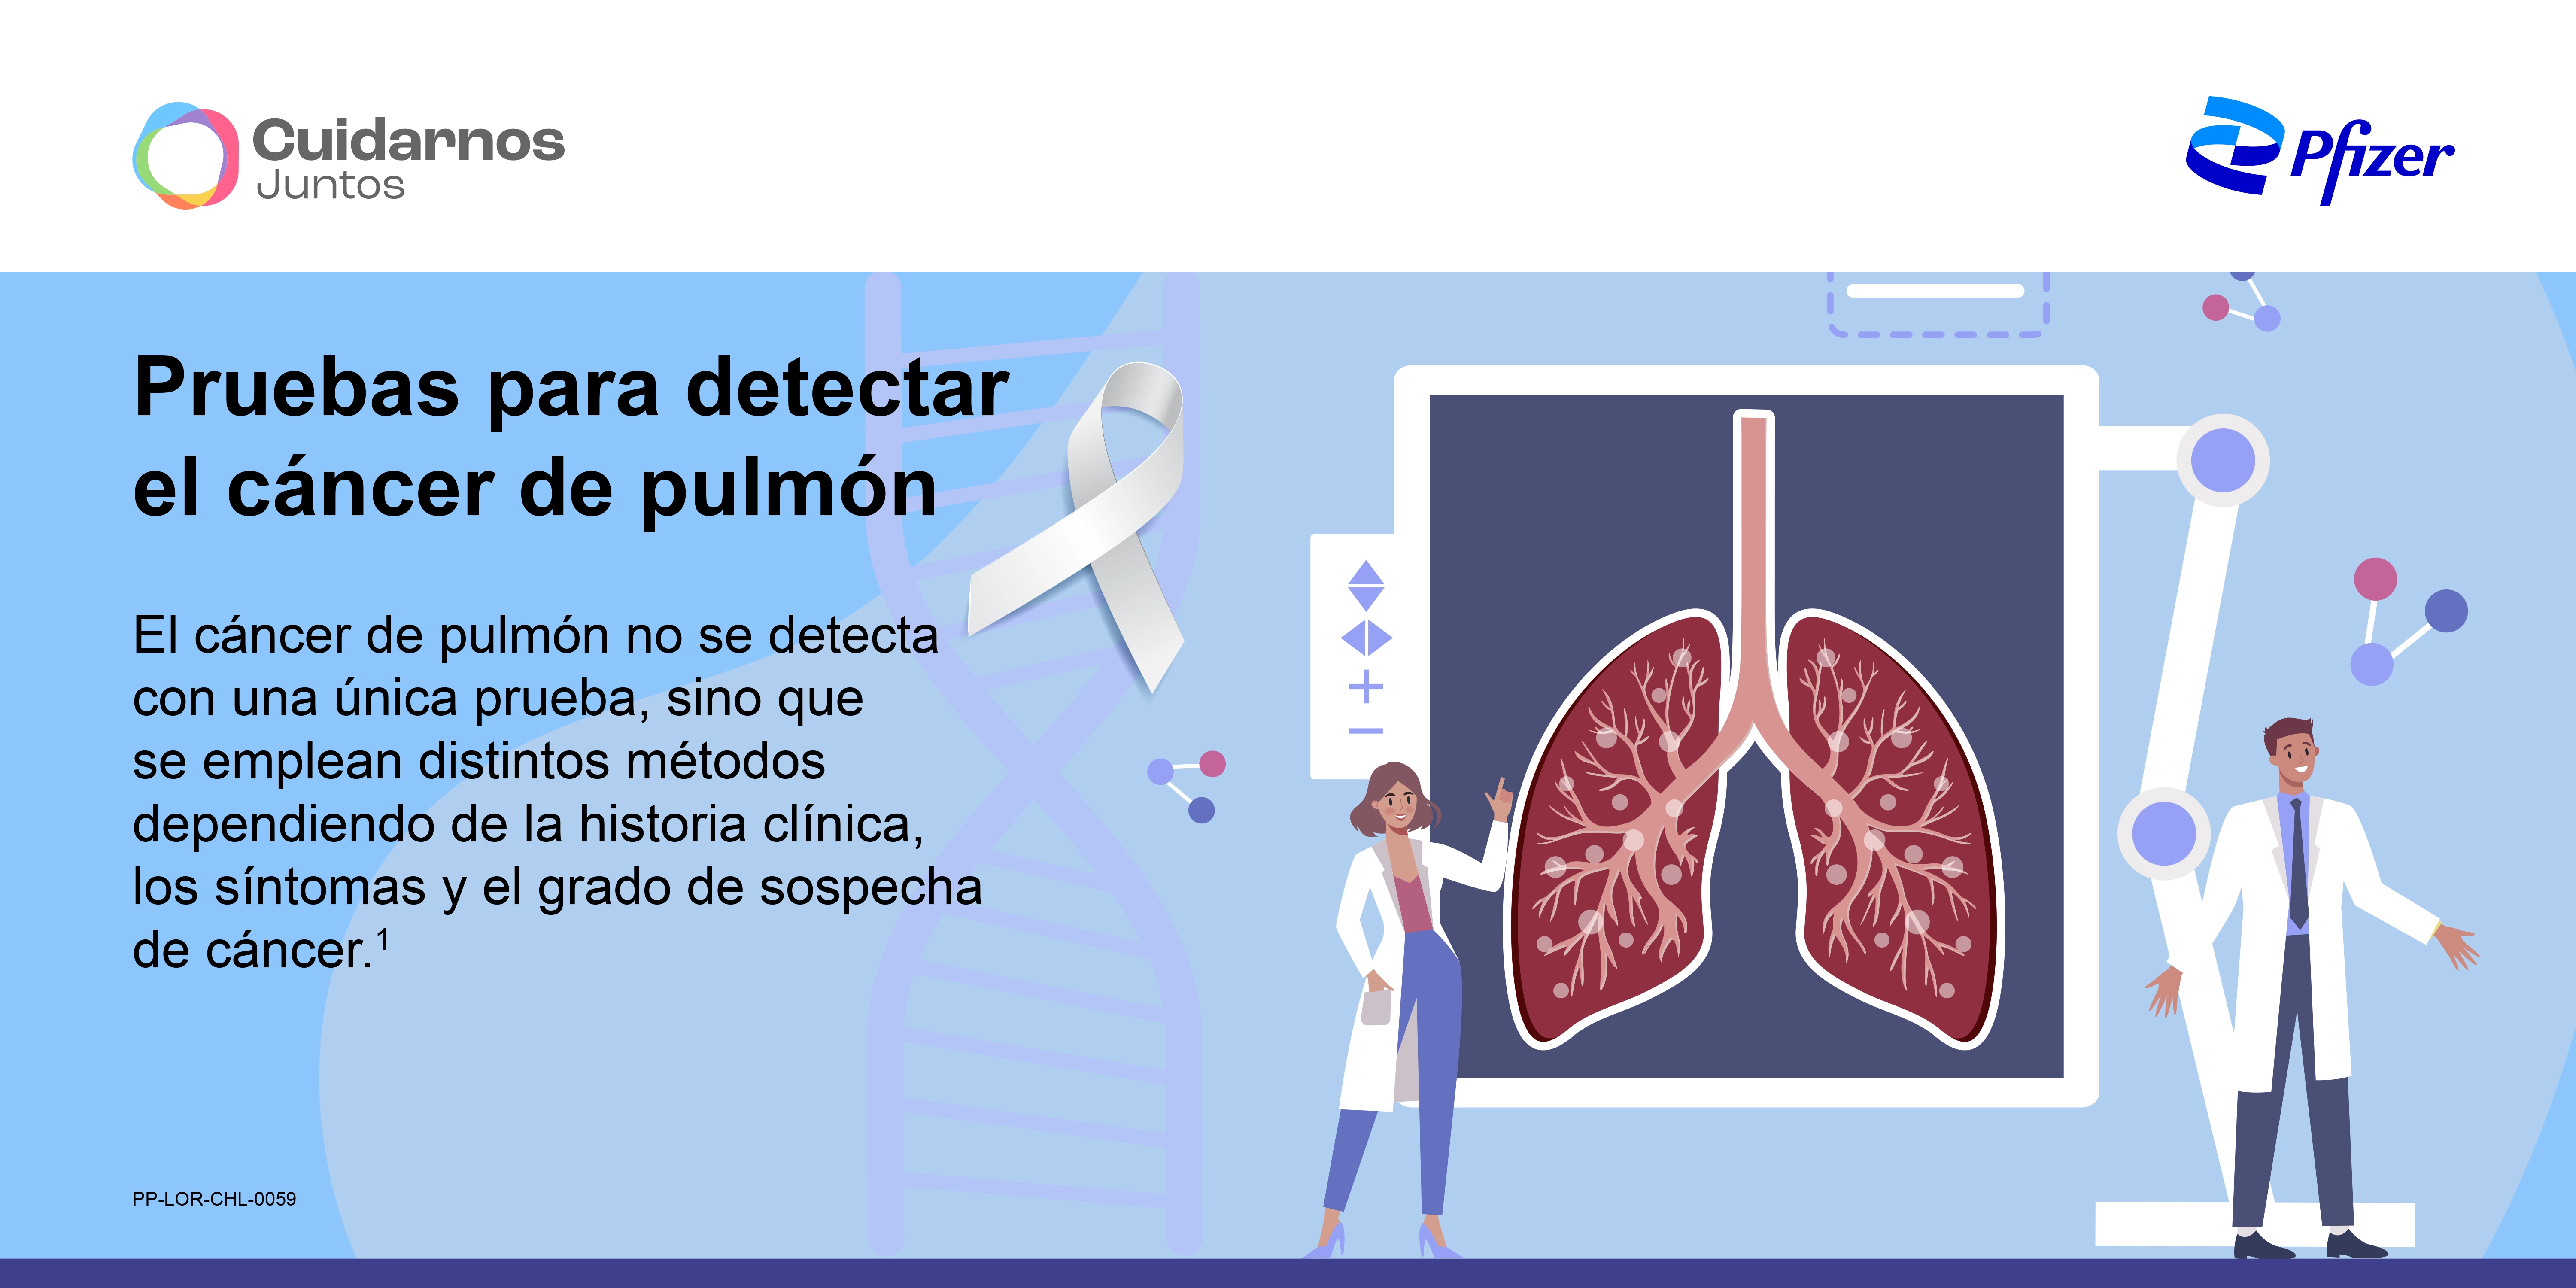 Pruebas para detectar el cáncer de pulmón